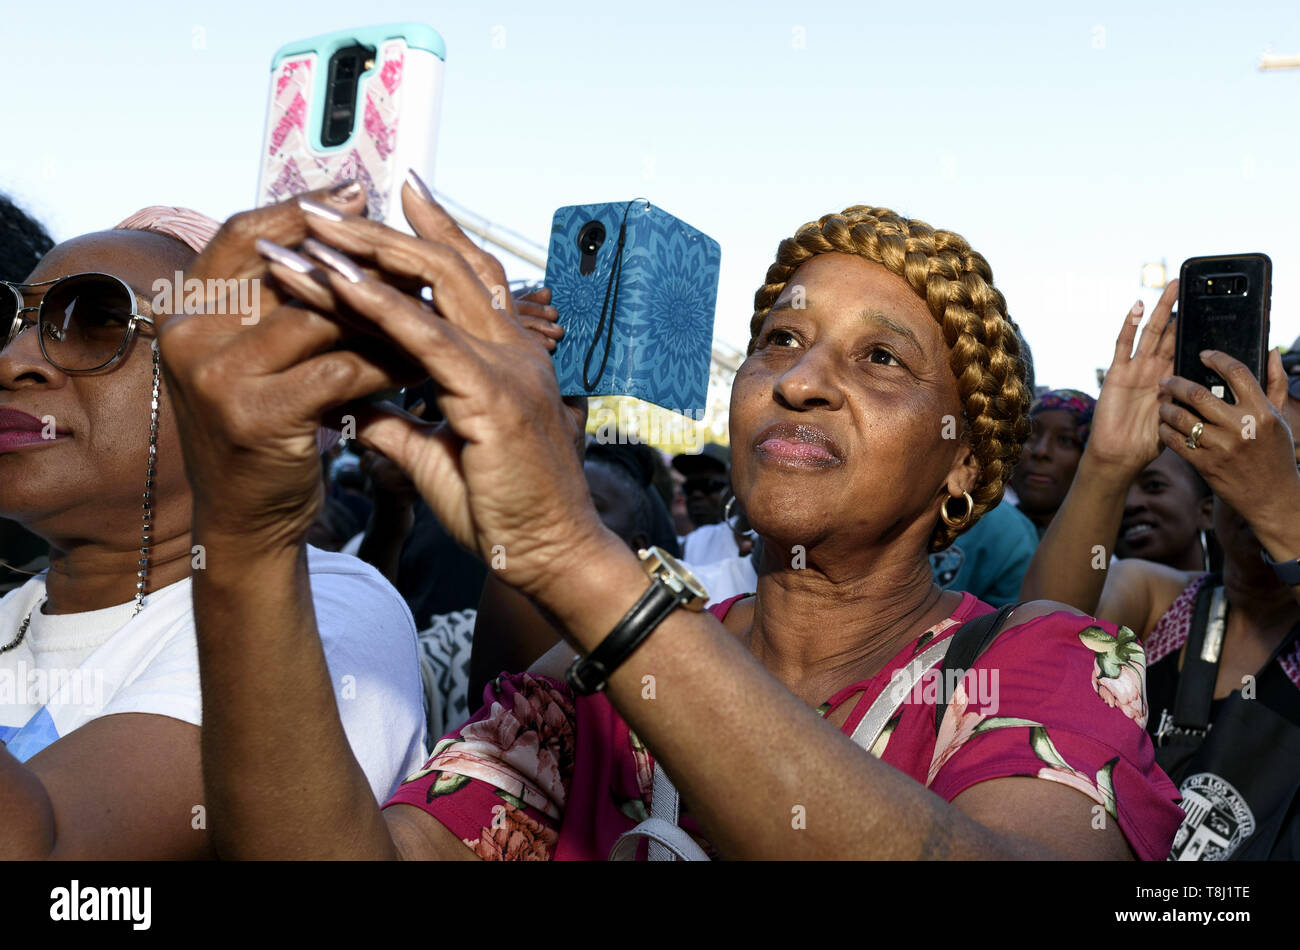 Los Angeles, CA, USA. 4 mai, 2019. Une femme vu prendre une pendant le festival selfies.Les gens se rassemblent dans le cadre d'un festival pour célébrer le changement de route de rodéo Boulevard Obama, en l'honneur de l'ancien président américain Barack Obama à Los Angeles, Californie. Ronen Crédit : Tivony SOPA/Images/ZUMA/Alamy Fil Live News Banque D'Images